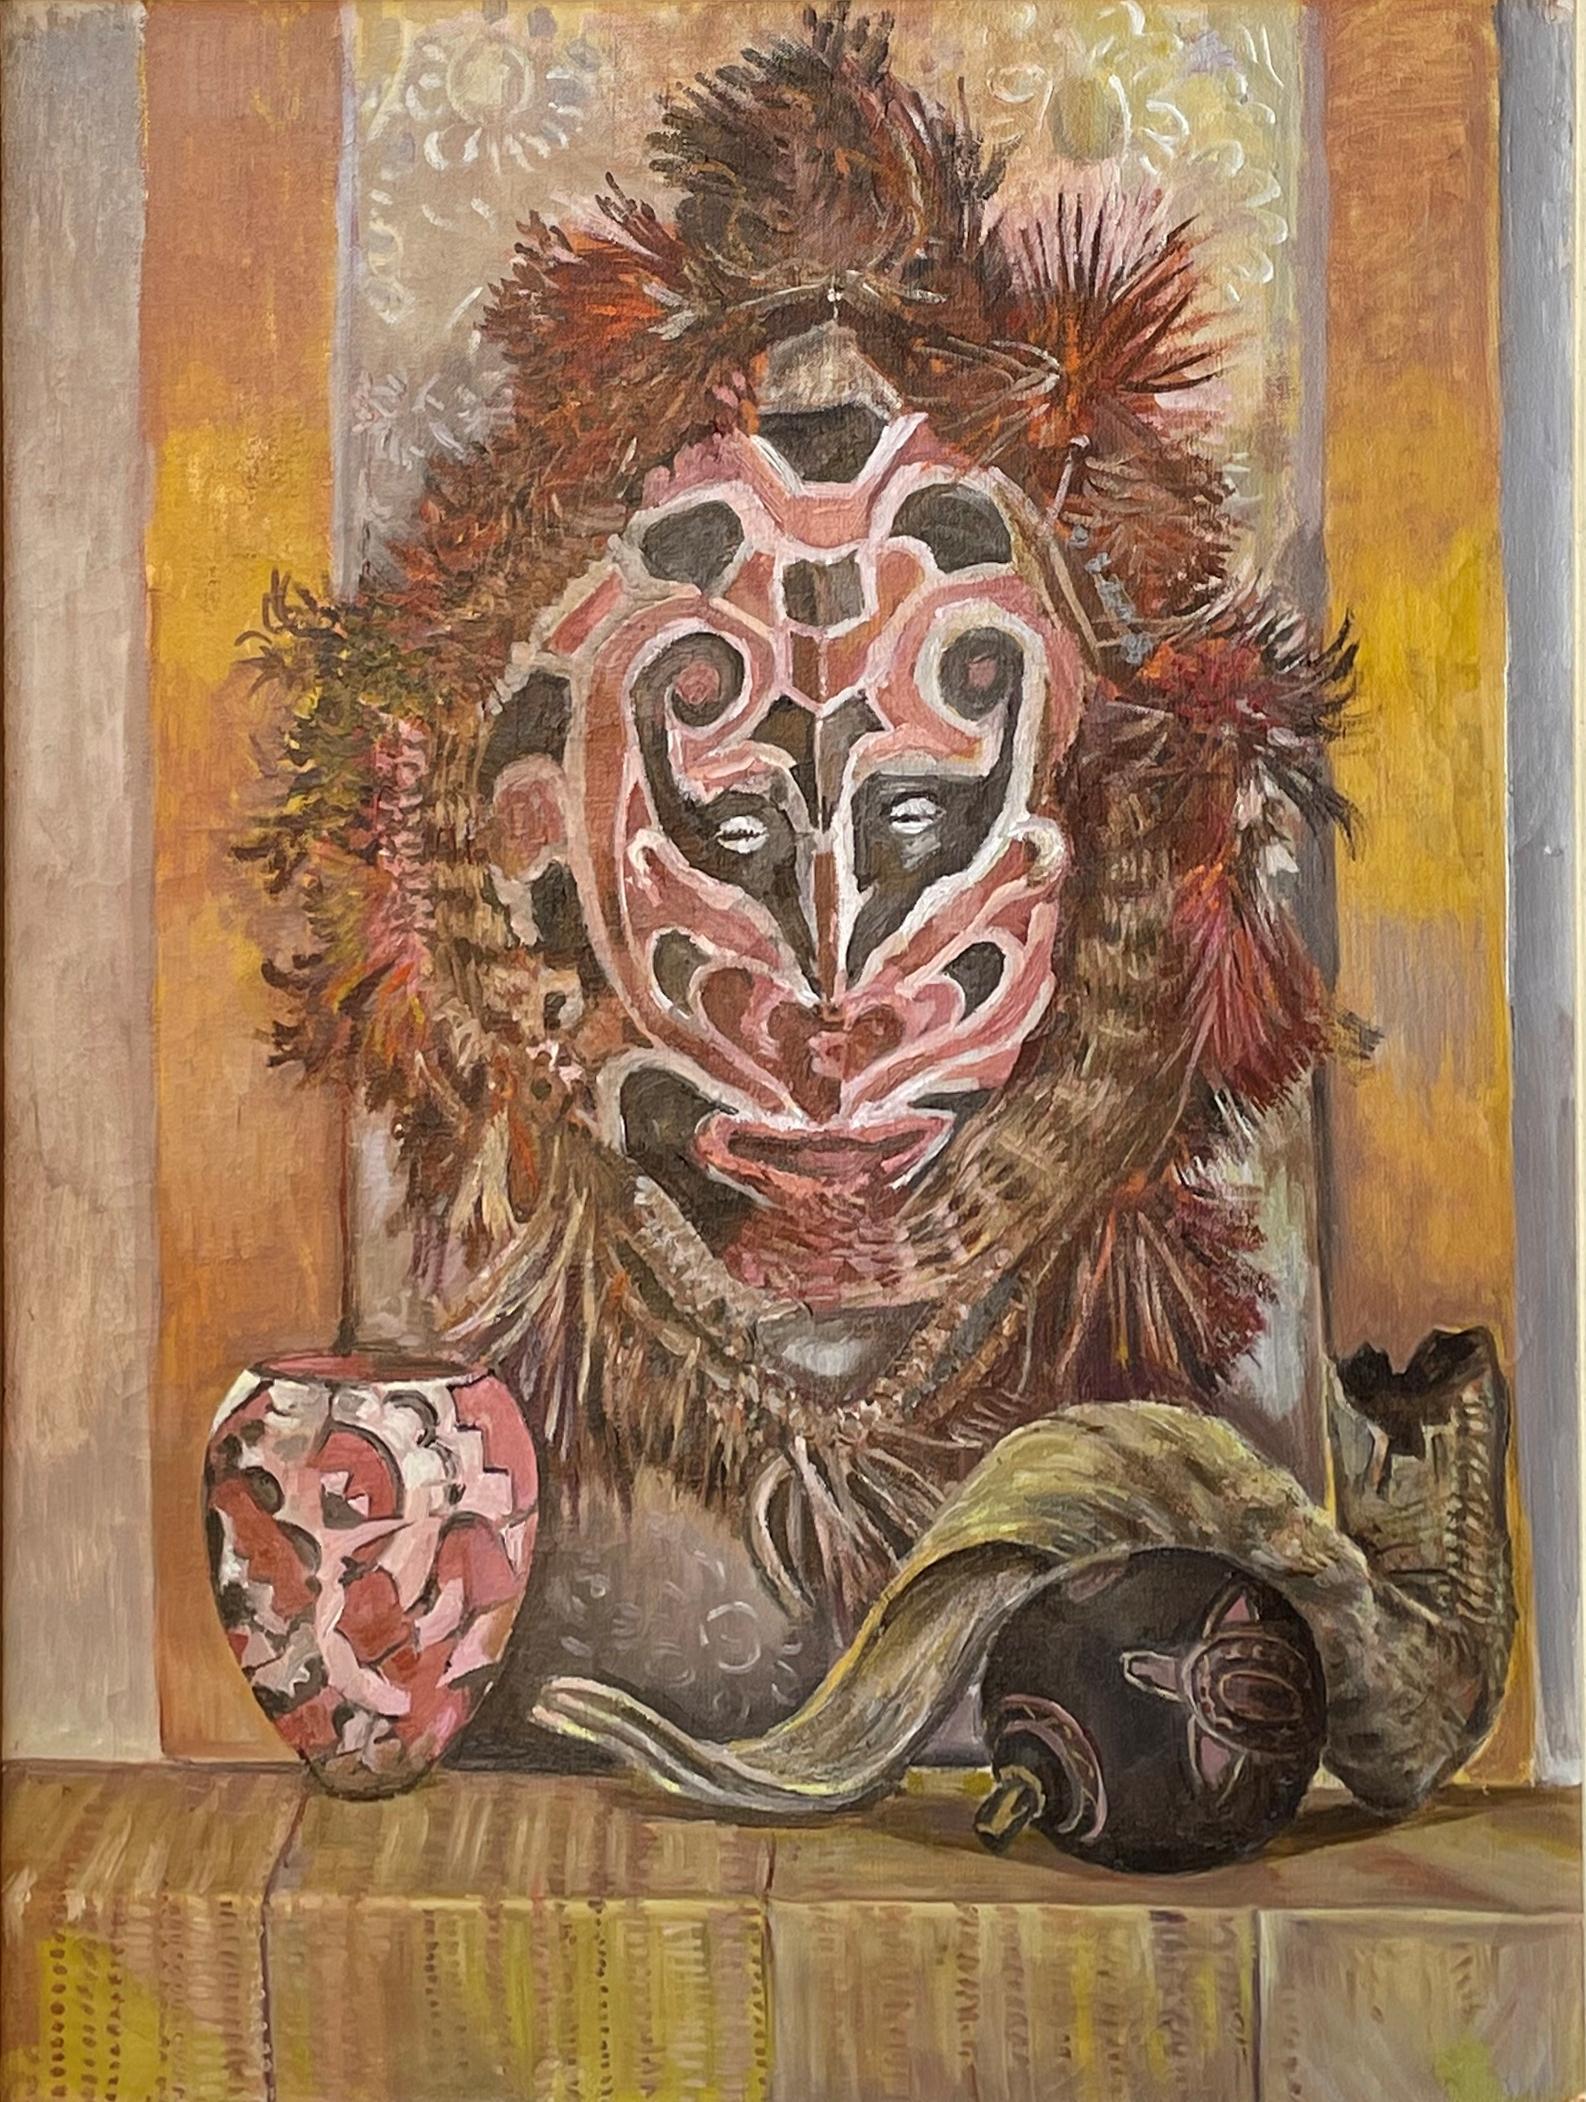 Edith Kramer (1916 - 2014)
Nature morte avec masque, s.d.
Huile sur toile
26 x 20 pouces (66 x 51 cm)
Signé et titré sur le châssis

Provenance :
Propriétaire de l'artiste

Kramer est né à Vienne, en Autriche-Hongrie, en 1916. À l'âge de 13 ans,